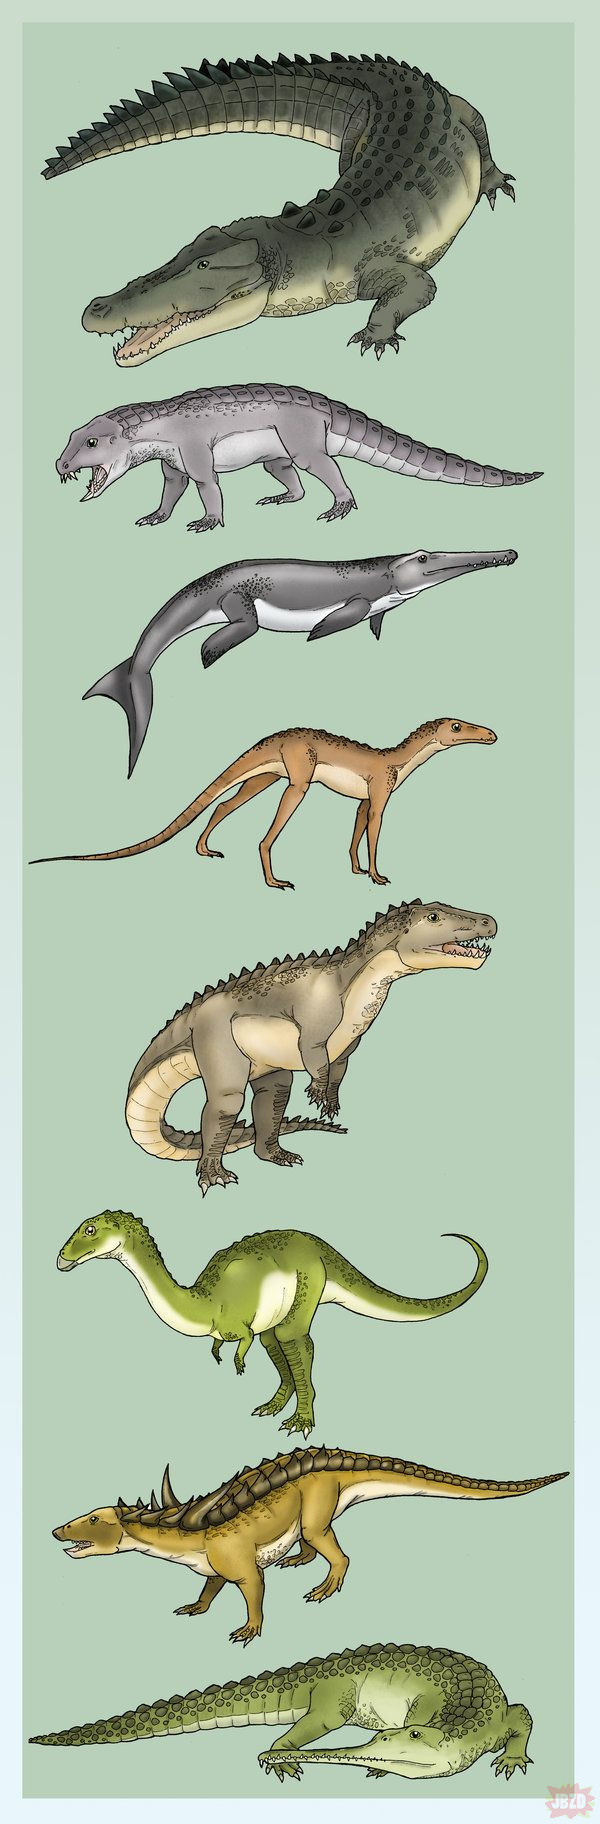 Gady z grupy crurotarsi (bliscy krewni dinozaurów)  - do dziś przetrwały z niej jedynie krokodyle.